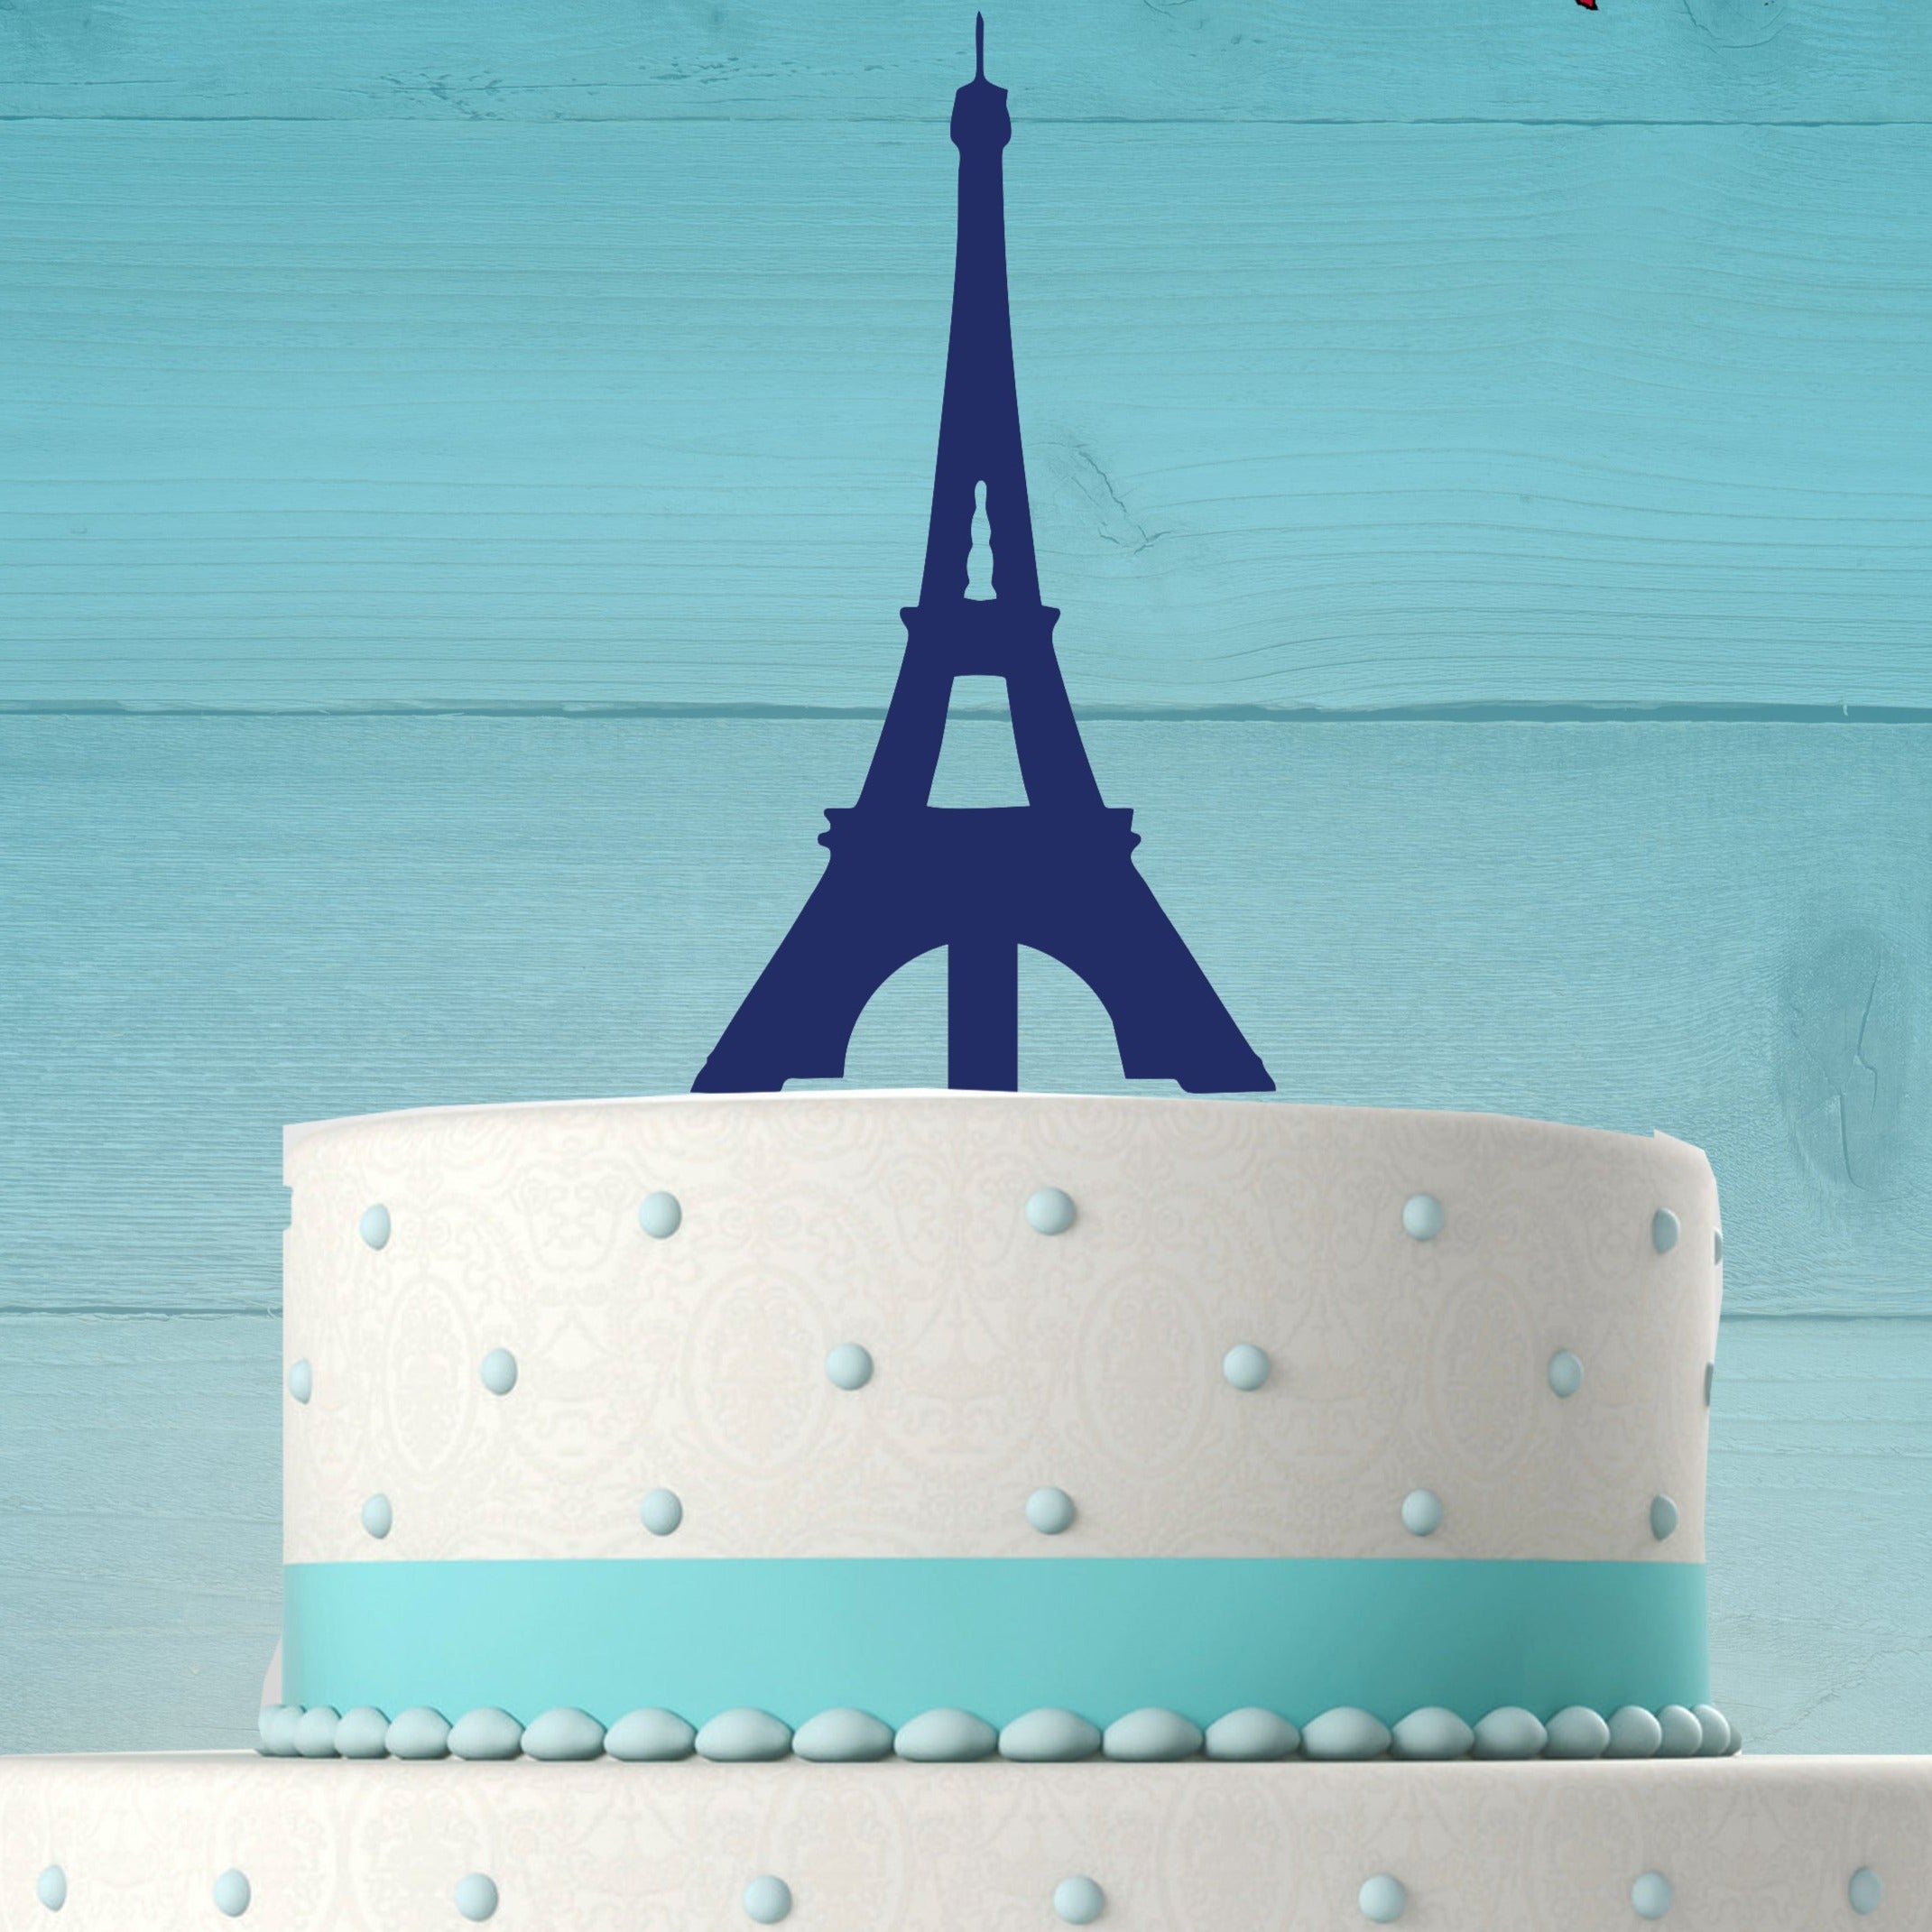 paris themed cake｜TikTok Search